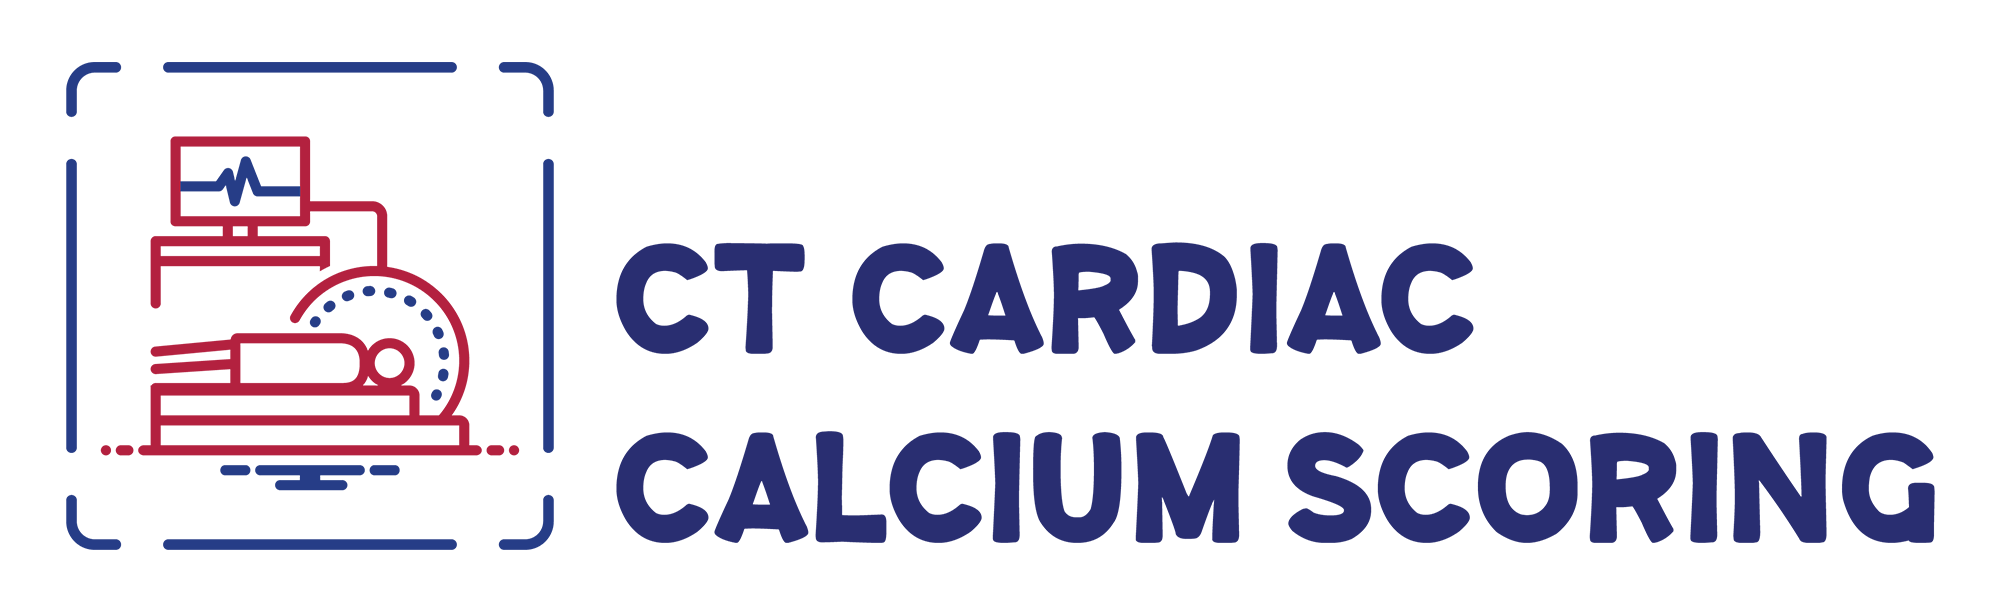 CT Cardiac Calcium Scoring, Delaware Imaging Network